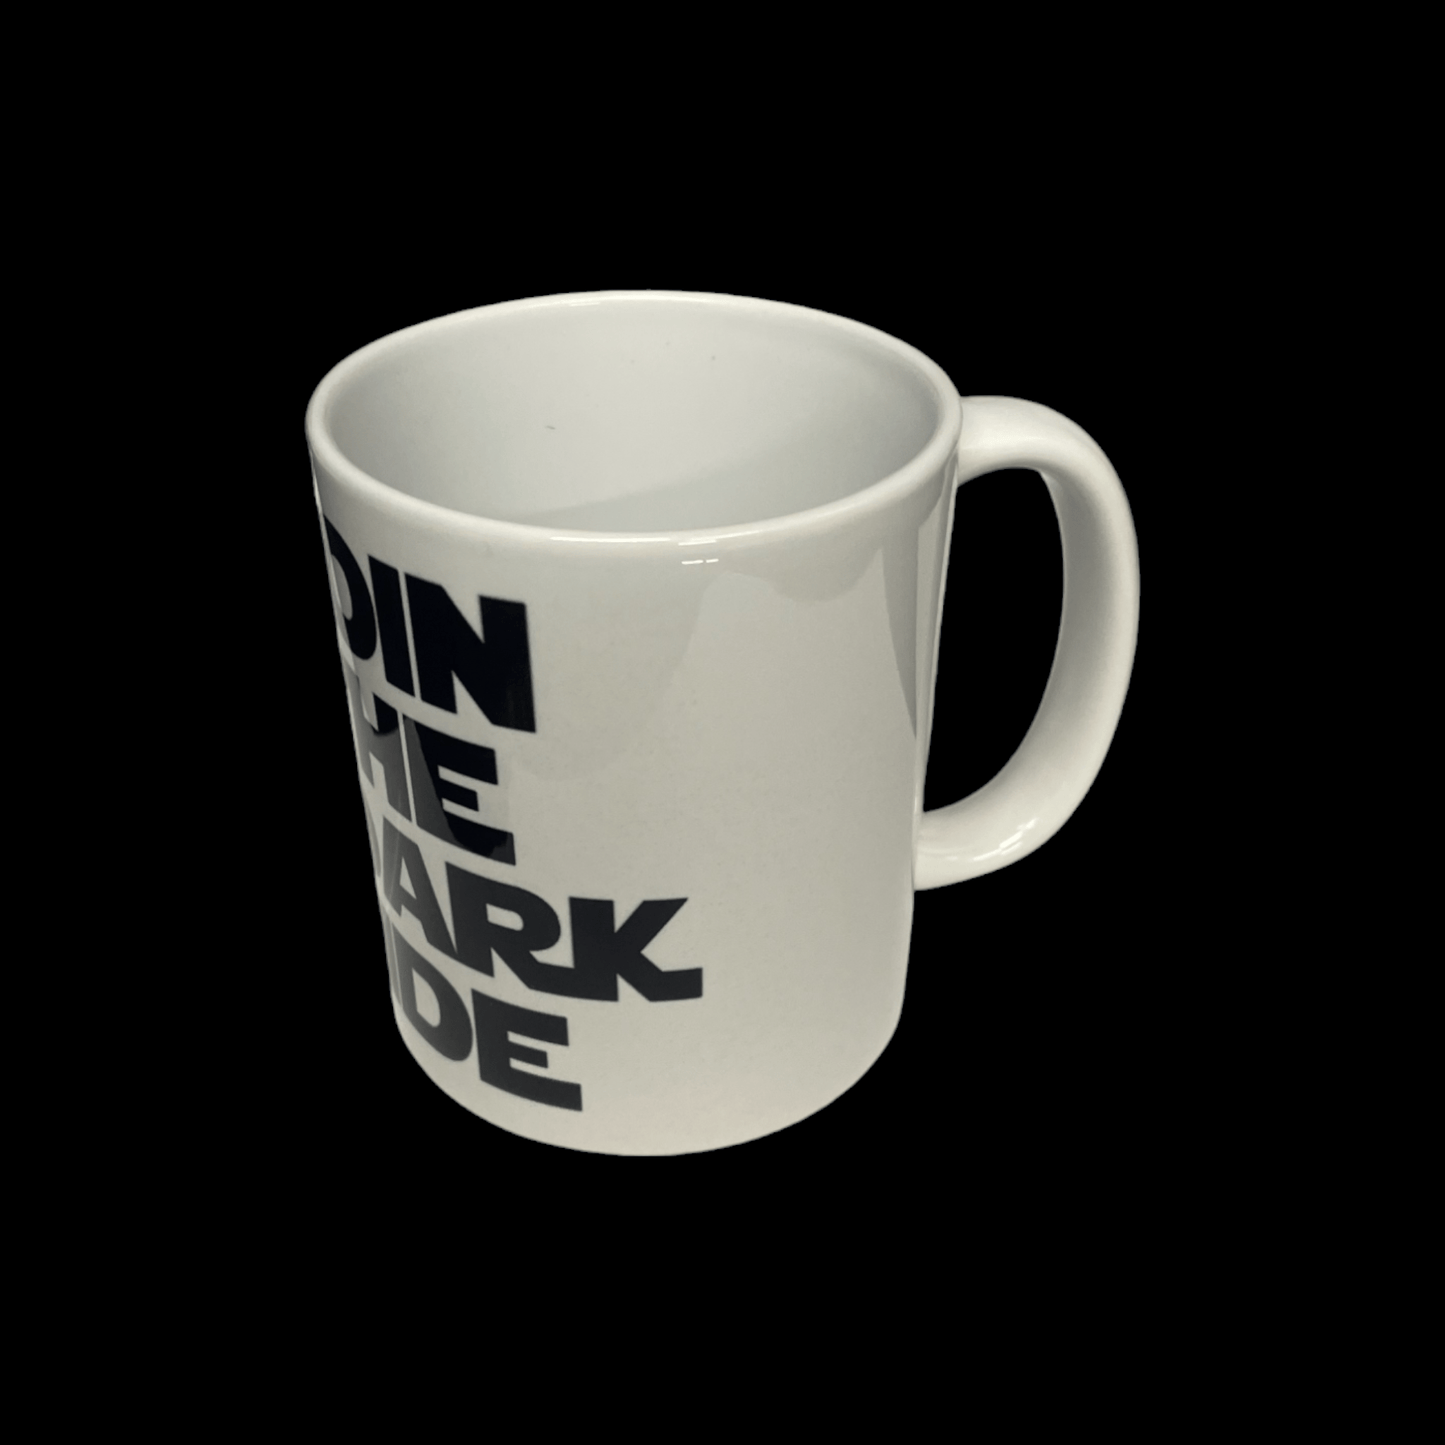 Join The Dark Side Star Wars Mug